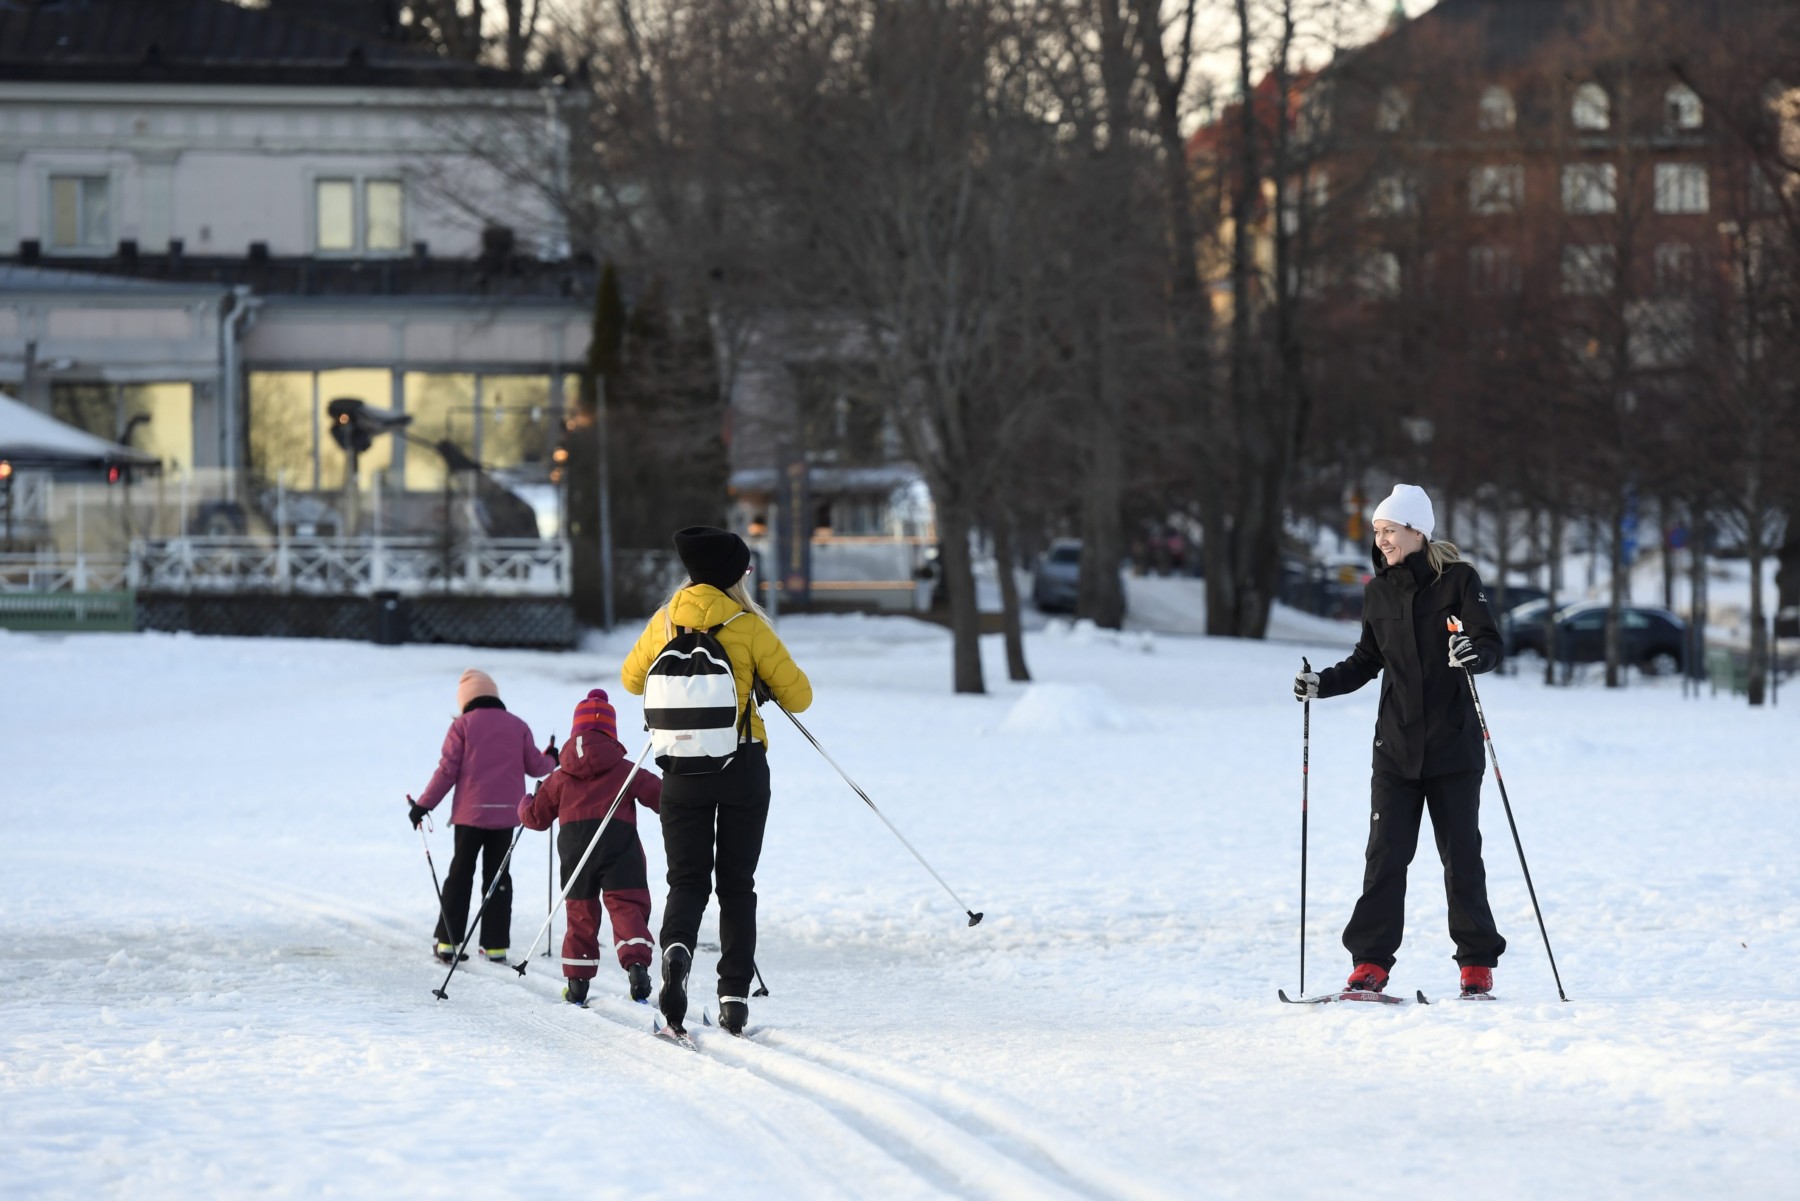 Deux adultes et deux enfants traversent un parc urbain à skis tandis qu’on aperçoit des immeubles à l’arrière-plan.